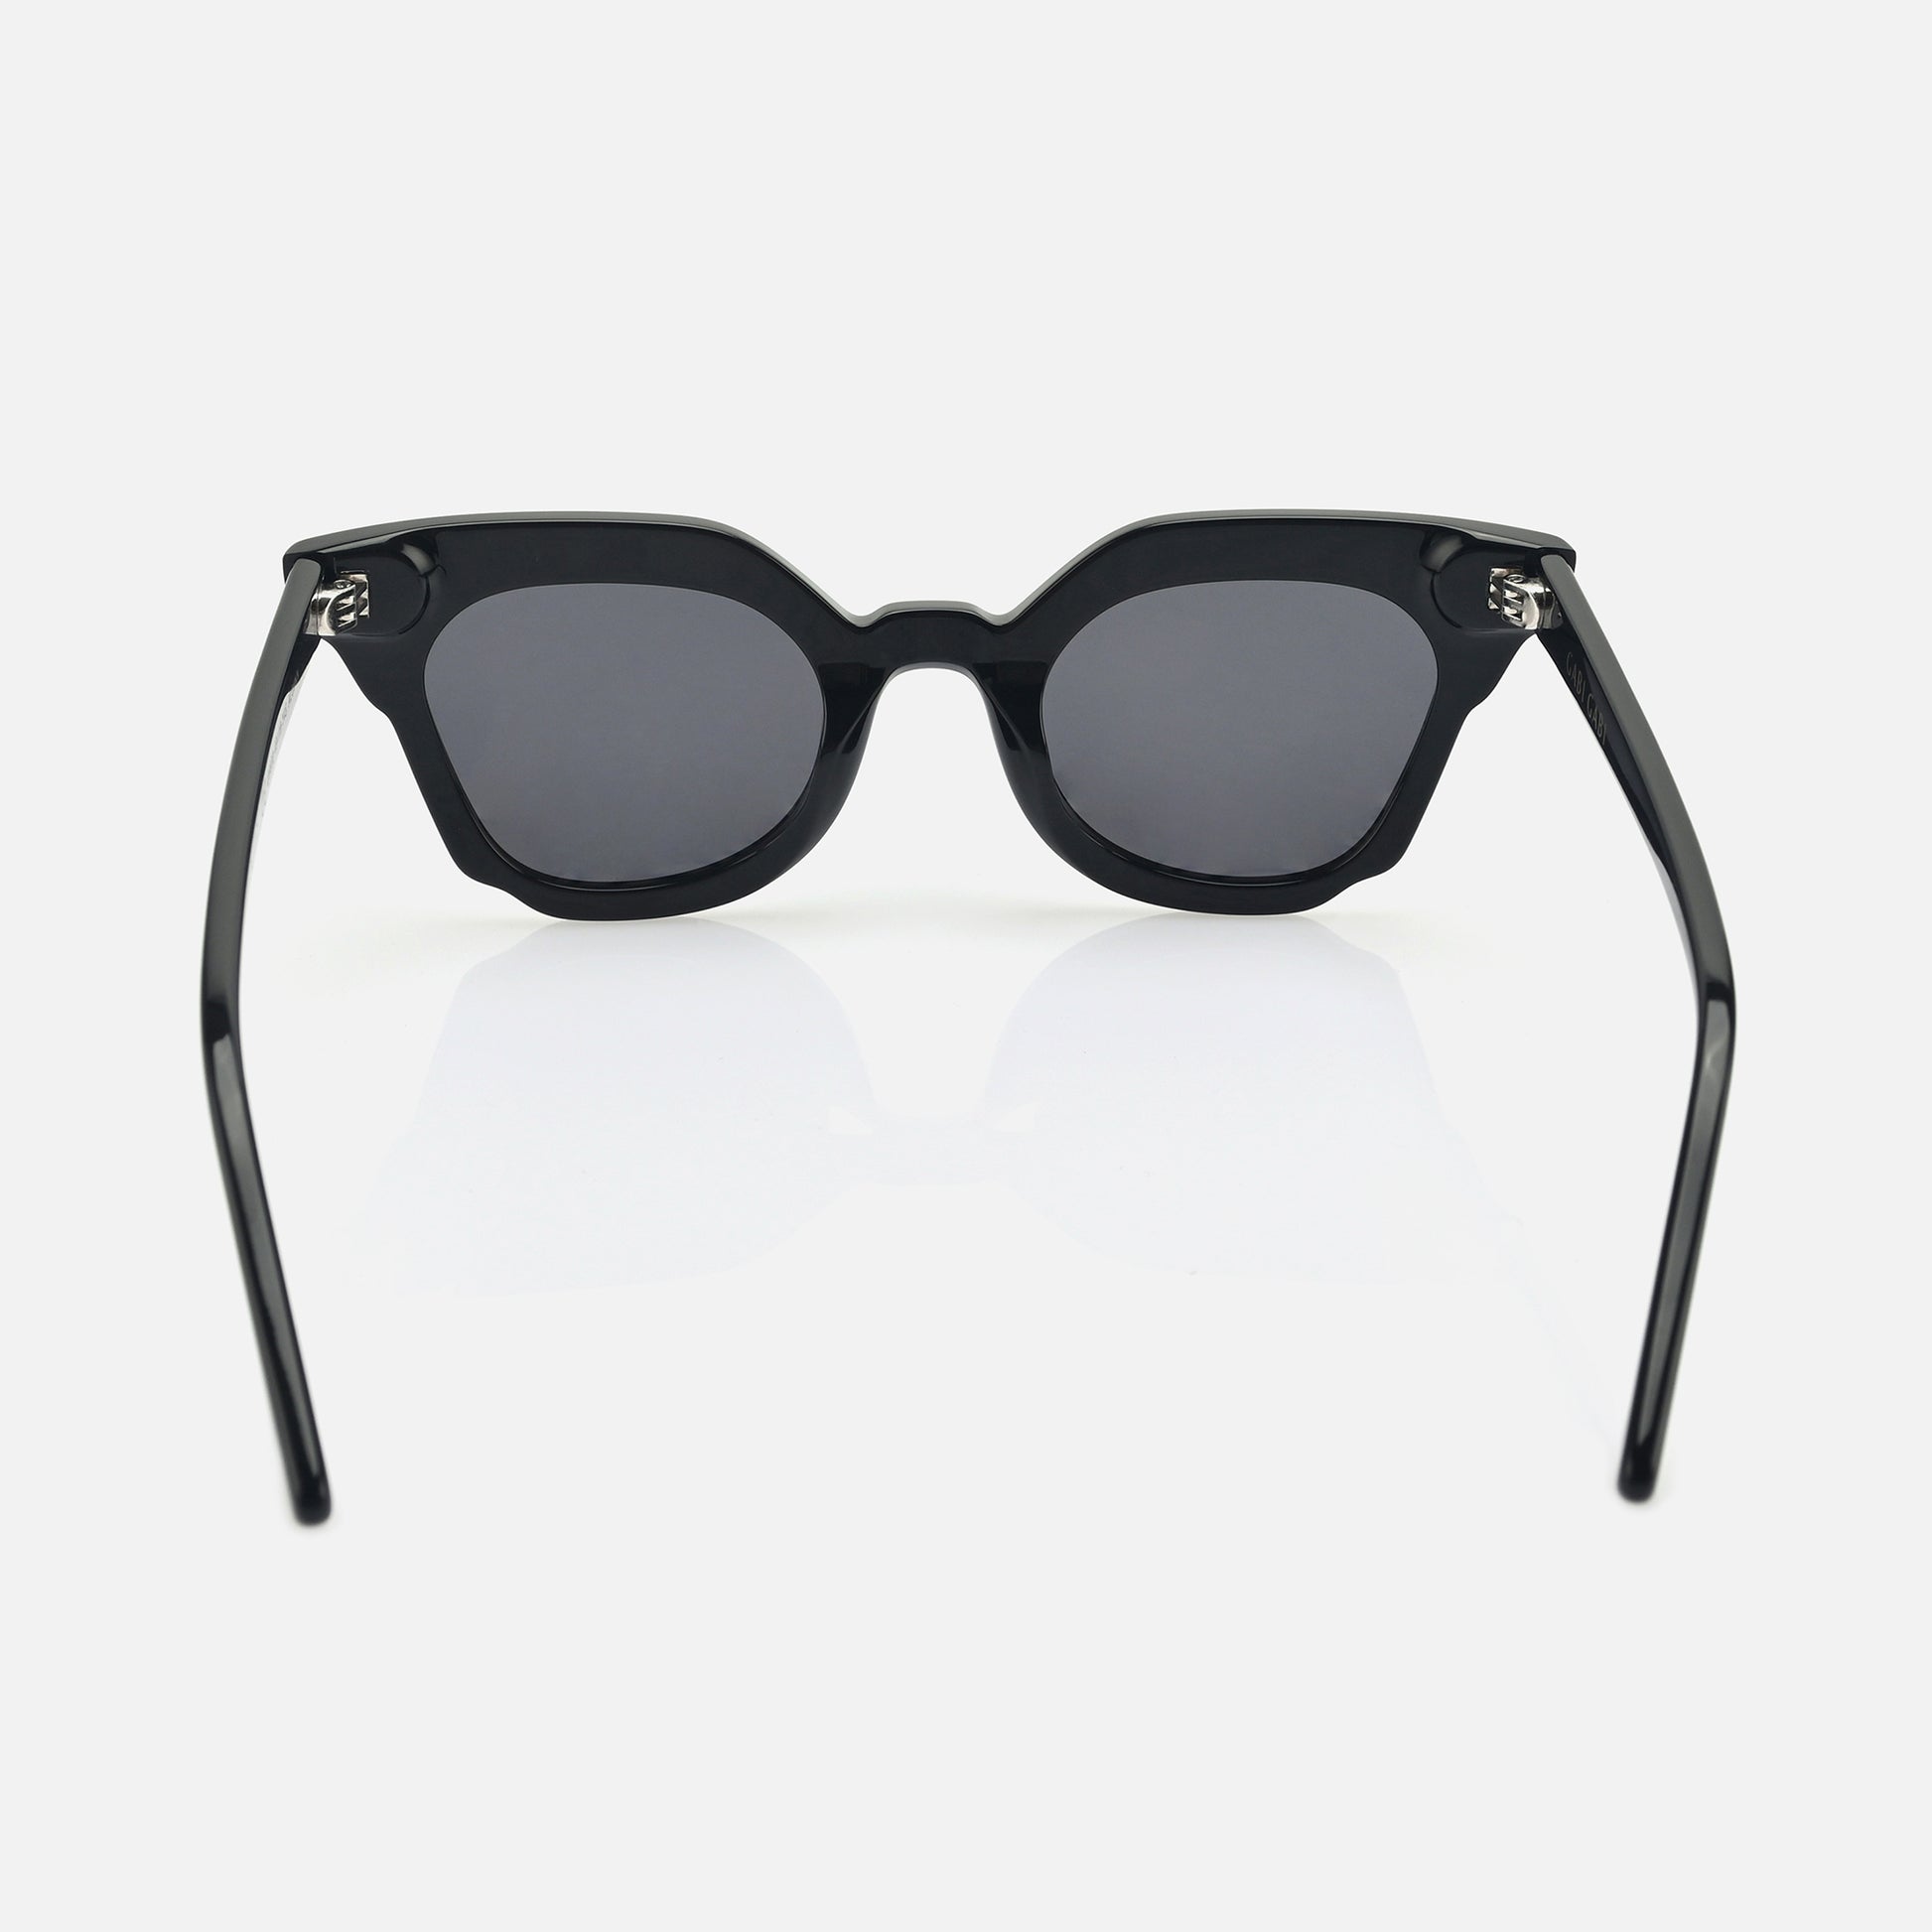 Latest style sunglasses for women - gabi eyewear